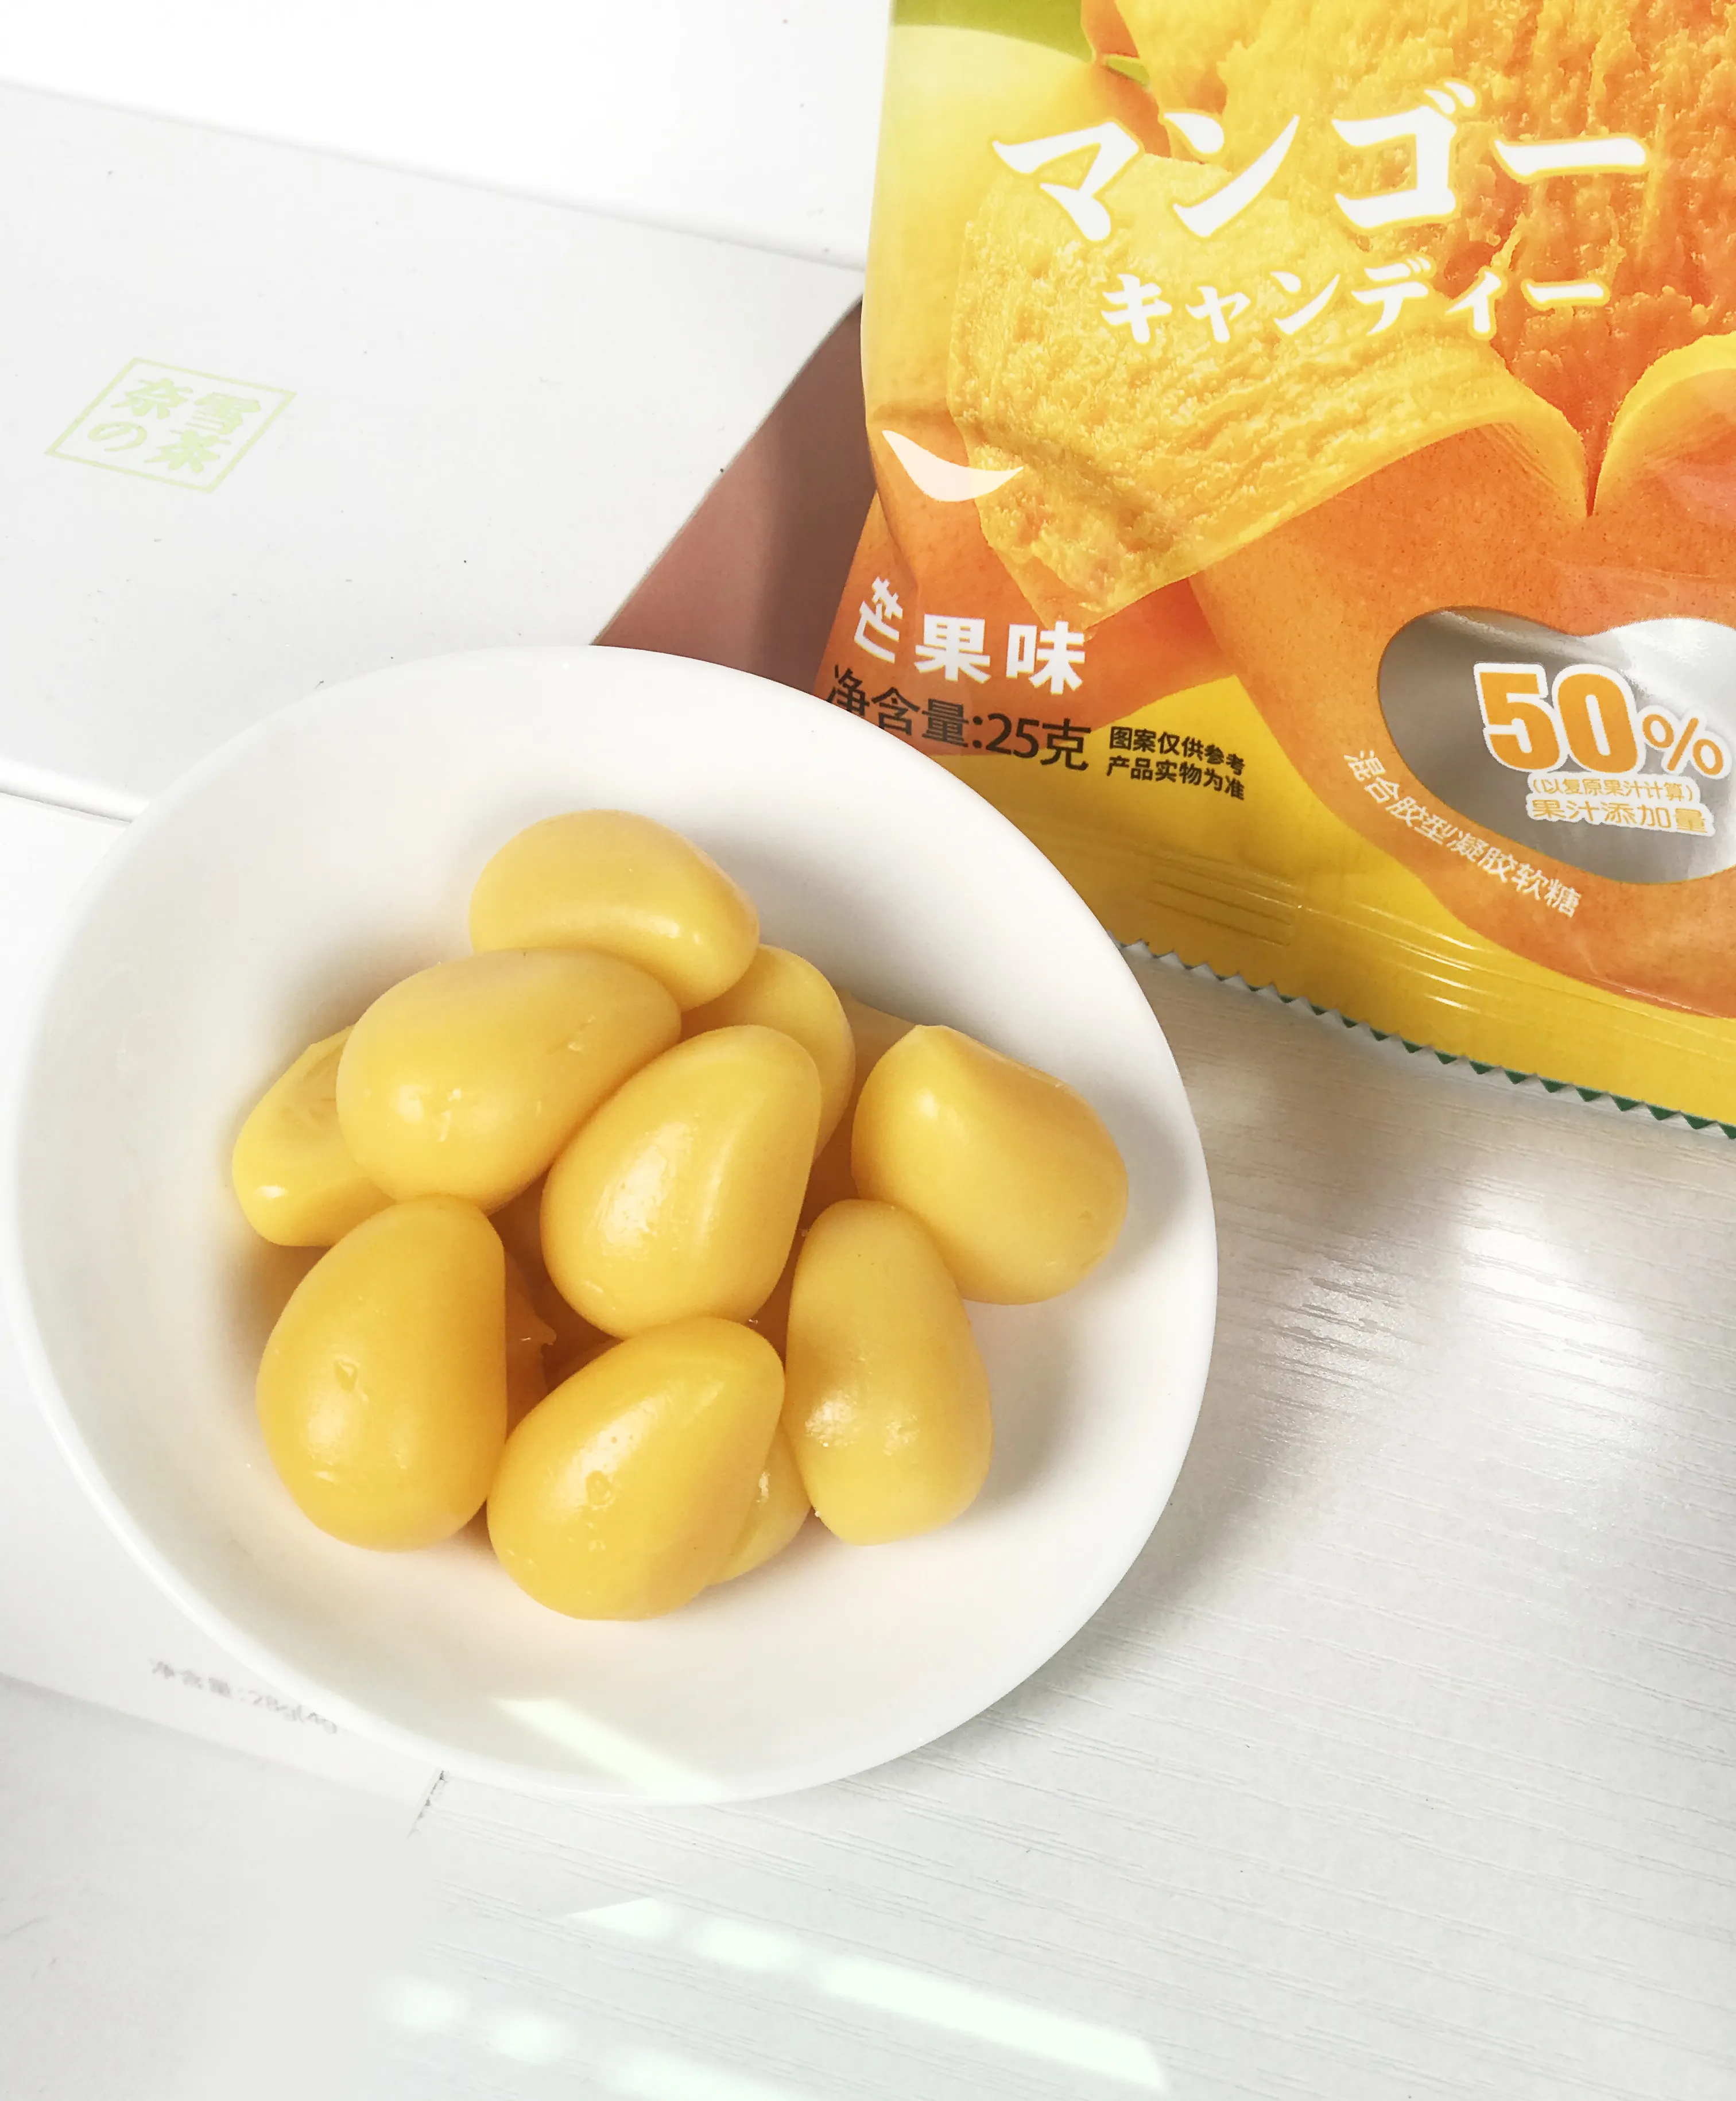 Оптовая продажа, желе-конфеты в форме манго Benhe